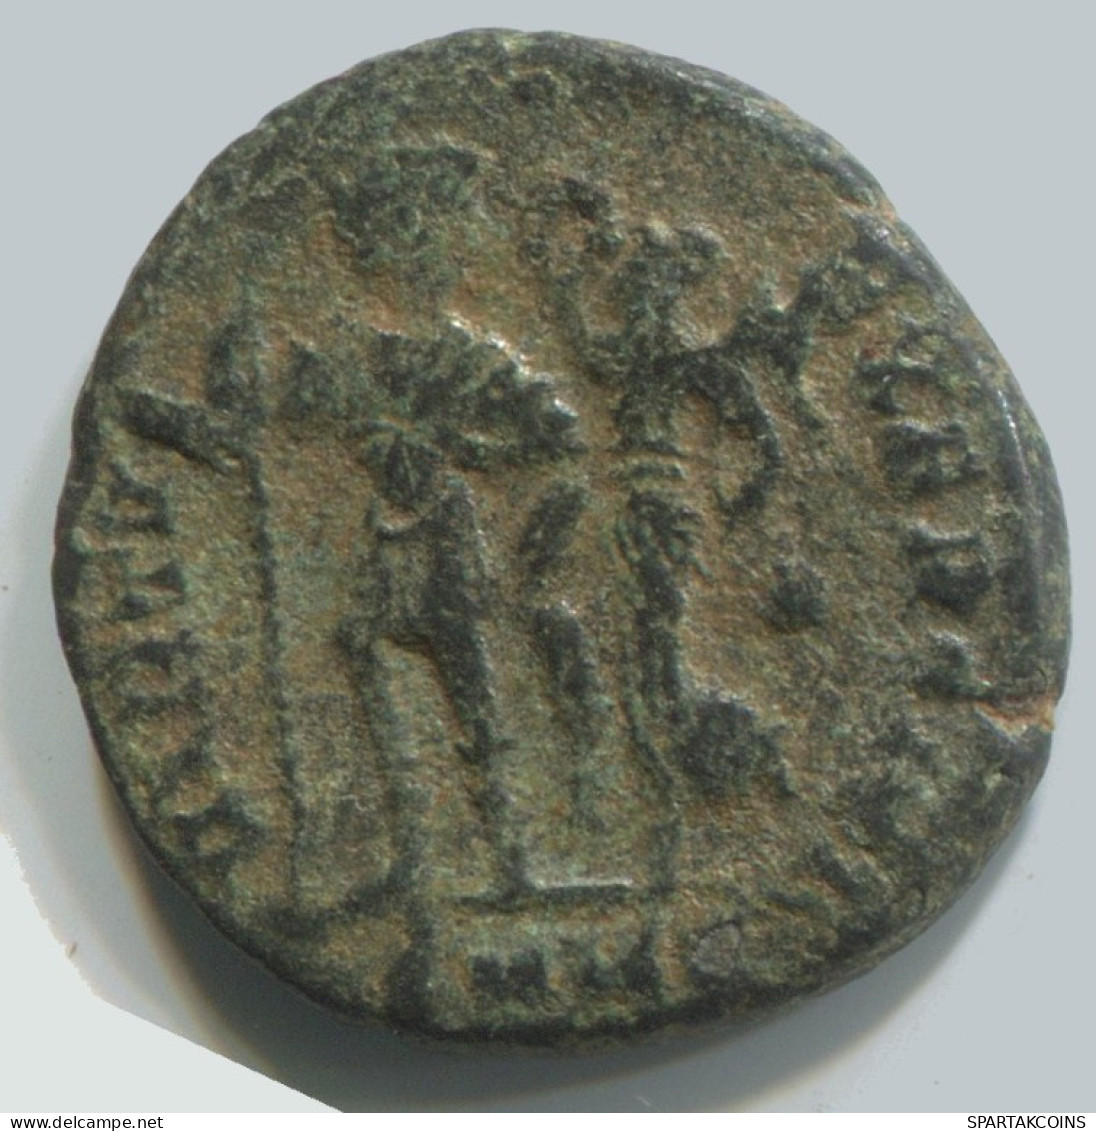 LATE ROMAN EMPIRE Coin Ancient Authentic Roman Coin 2.8g/18mm #ANT2356.14.U.A - La Fin De L'Empire (363-476)